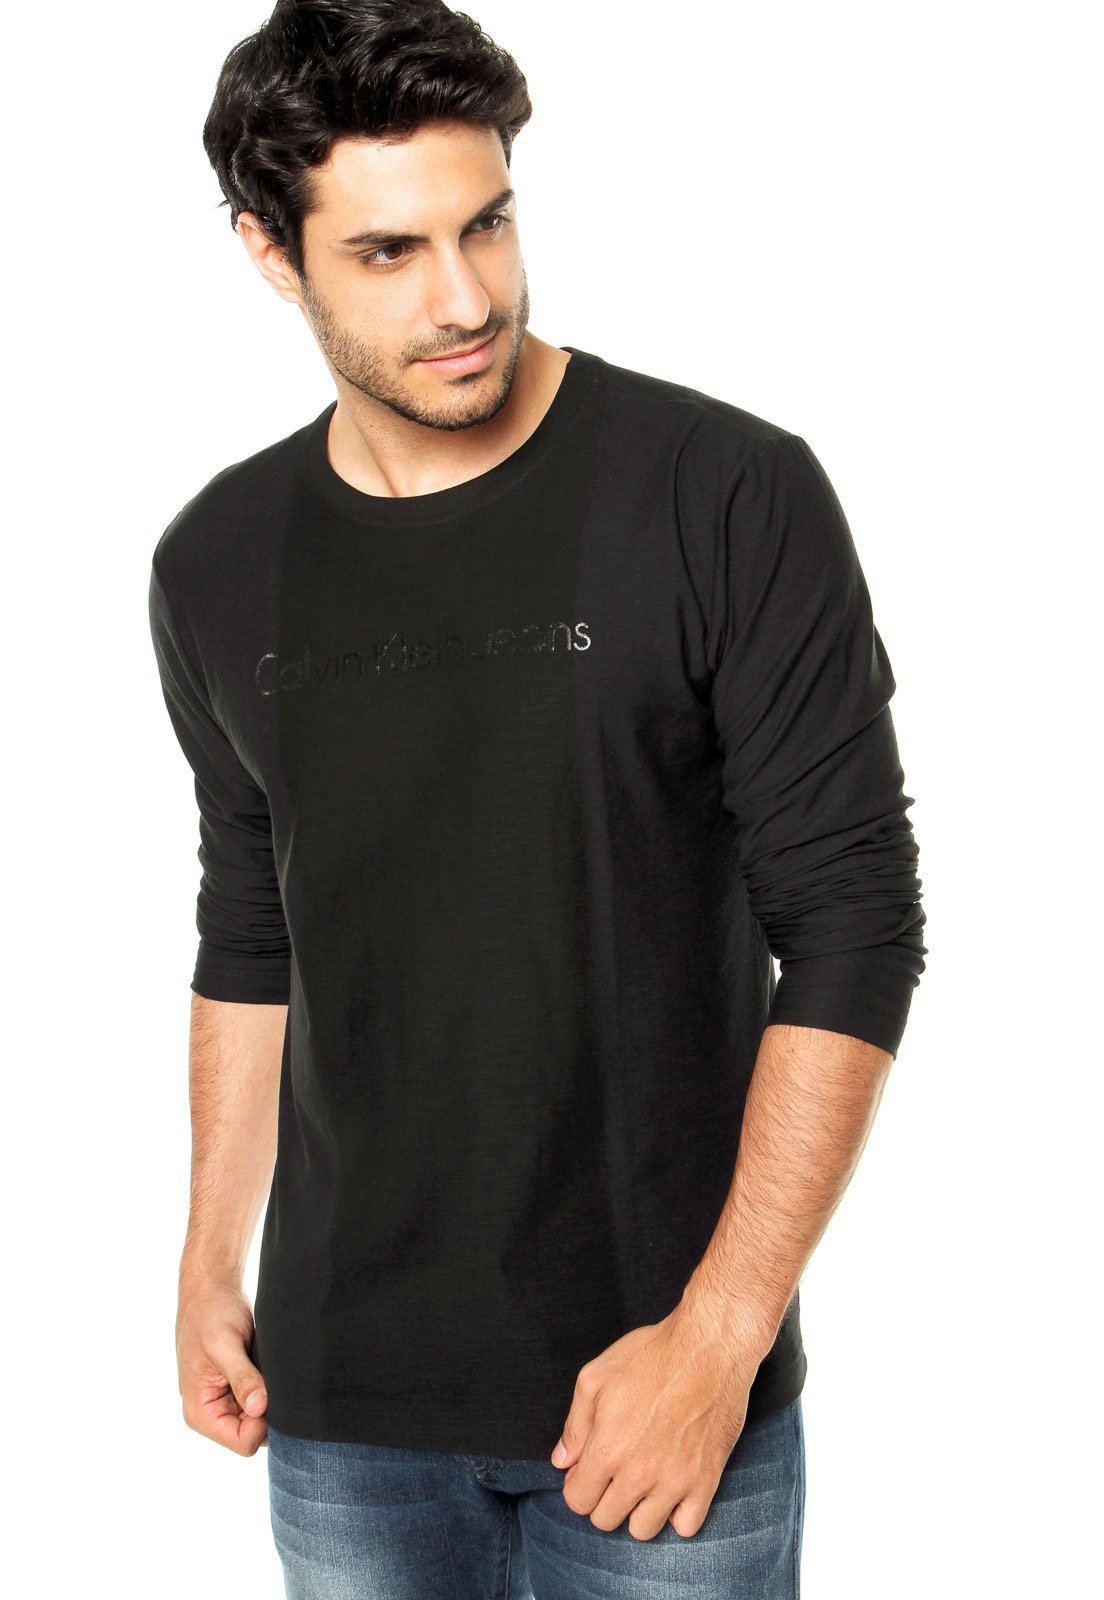 Camiseta Calvin Klein Masculina Dafiti Shop, 52% OFF | espirituviajero.com